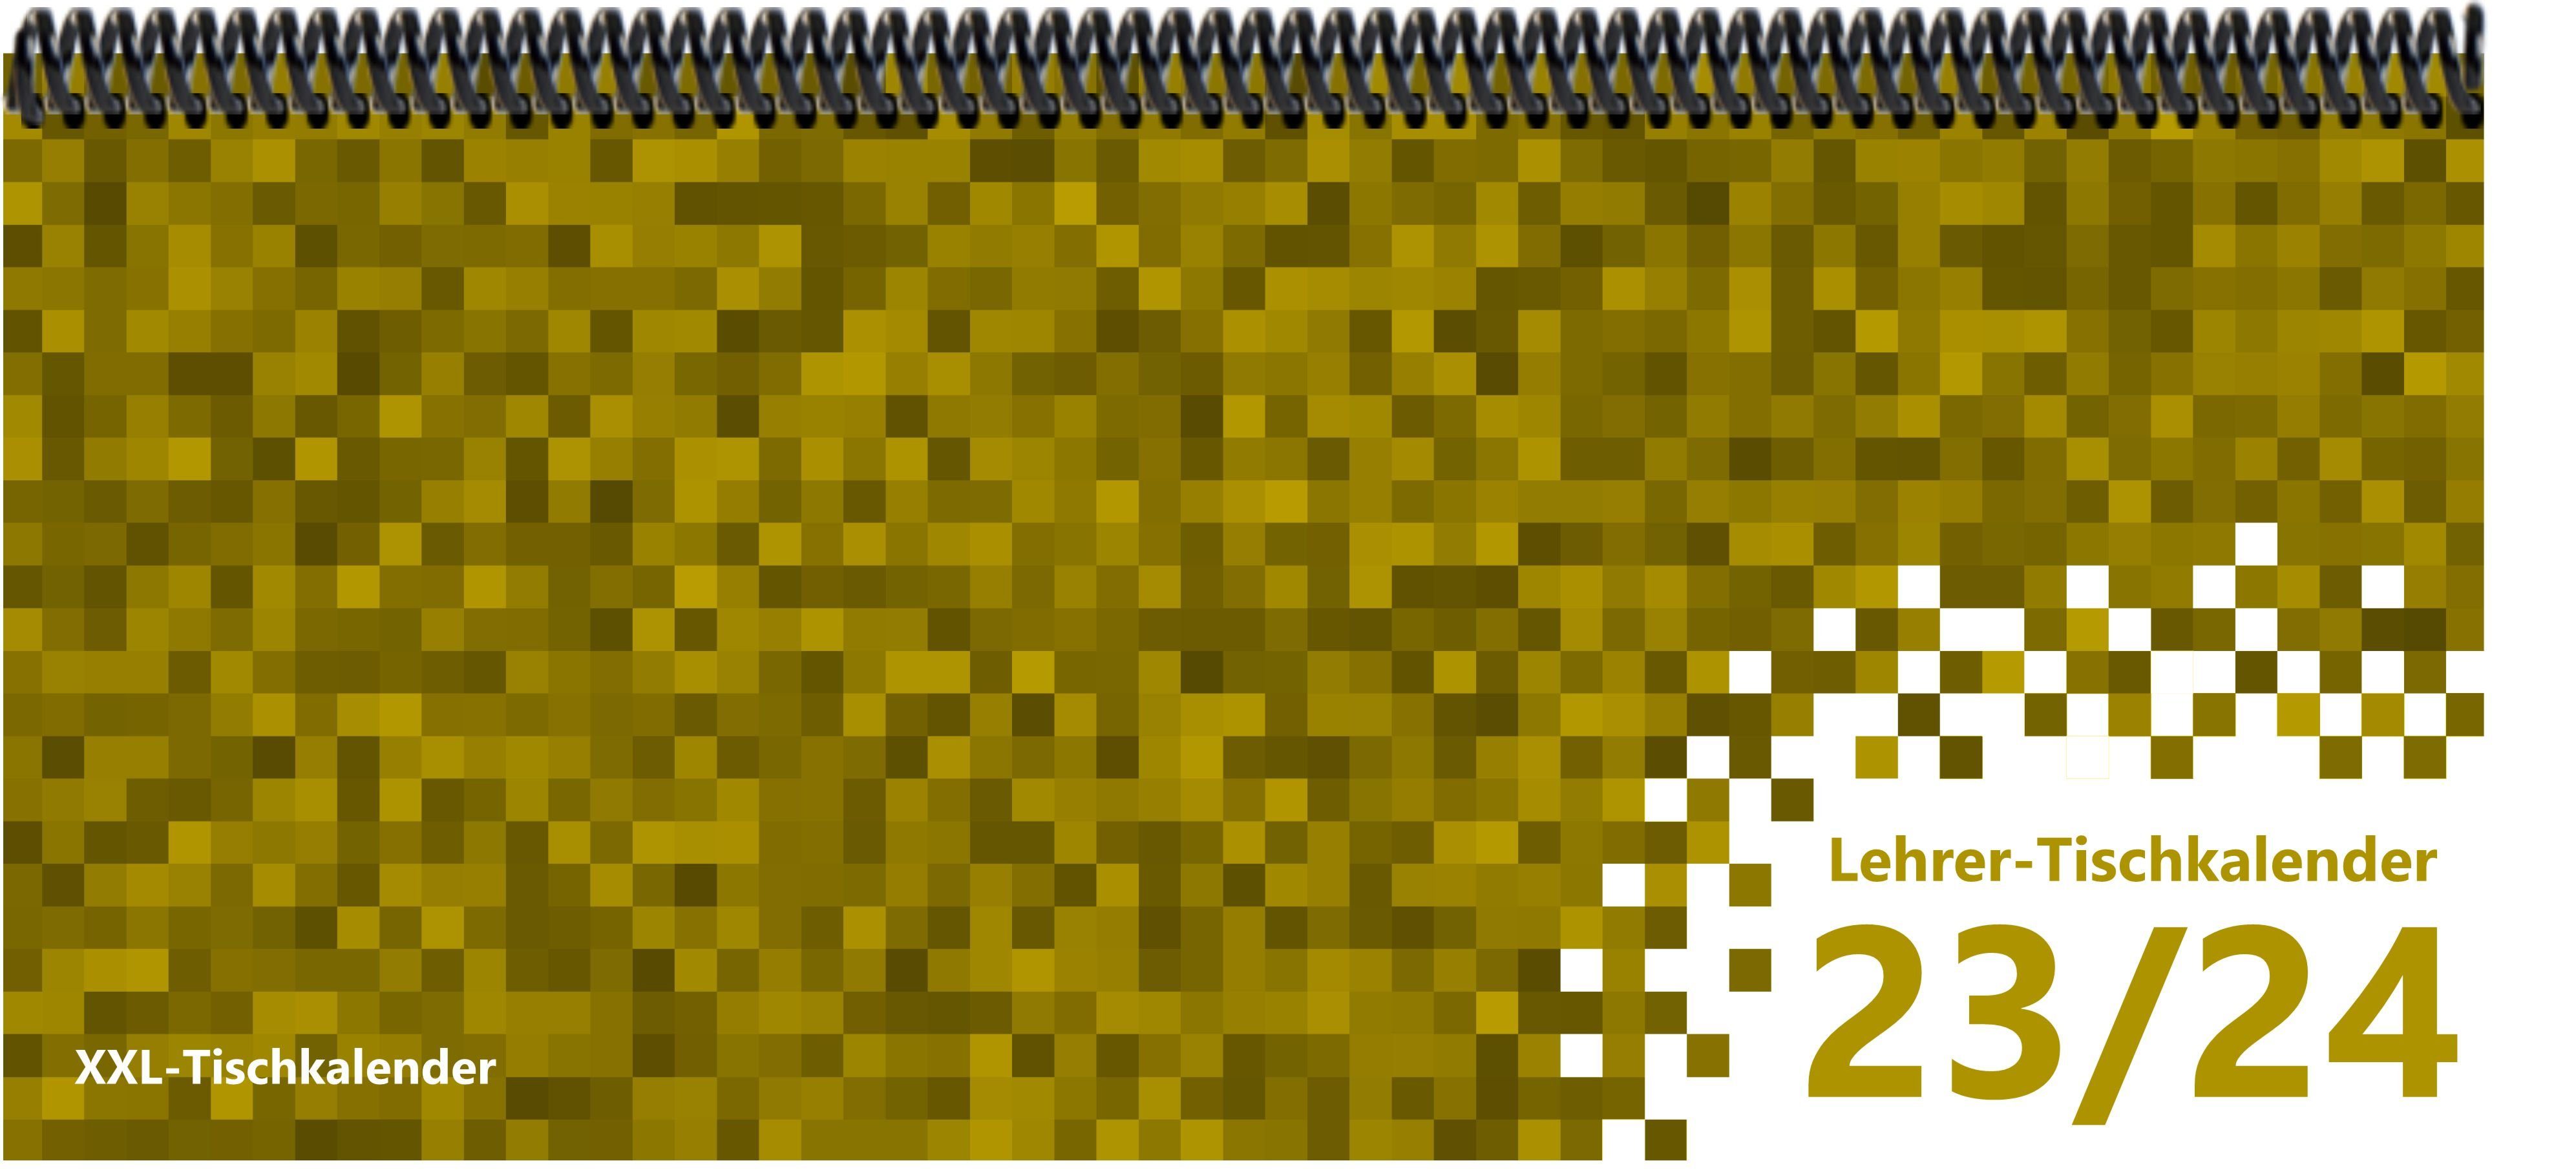 E&Z Verlag Gmbh Schreibtischkalender Lehrer - Tischkalender XXL 2023/2024 mit dem Muster Pixel gelb